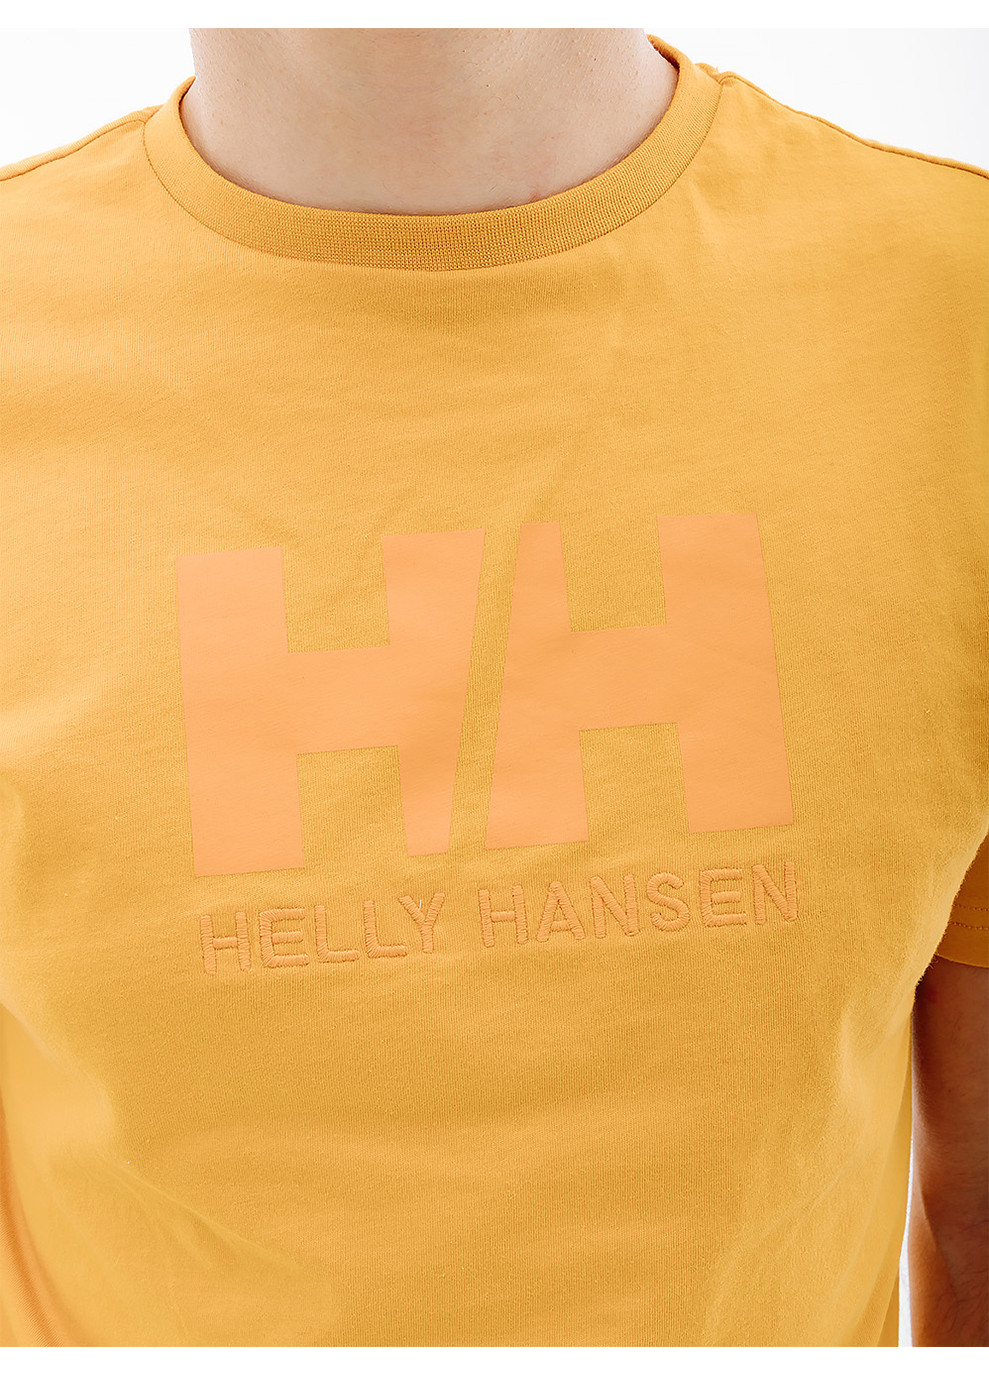 Оранжевая мужская футболка hhogo t-shirt оранжевый Helly Hansen